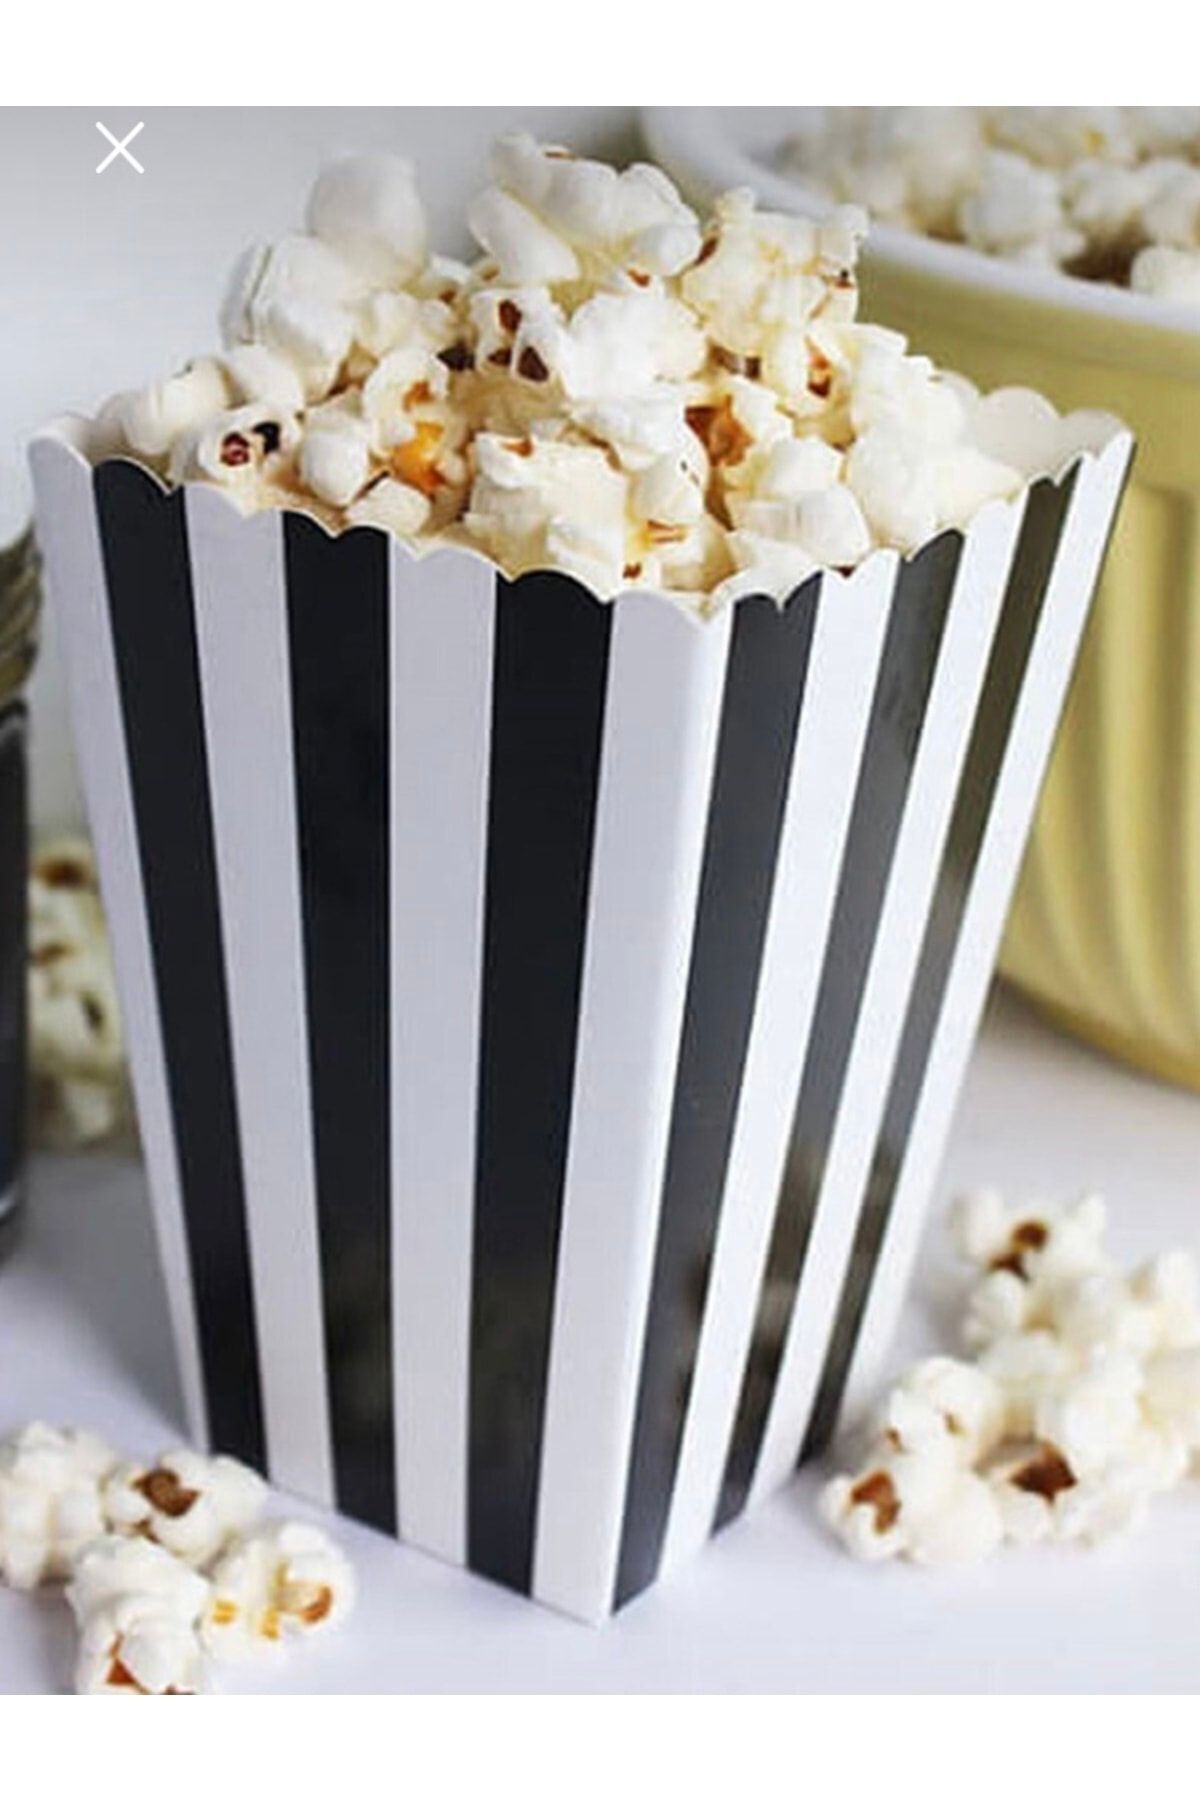 Deniz Party Store Siyah Beyaz Çizgili Karton Popcorn Mısır Cips Kutusu 8 Adet